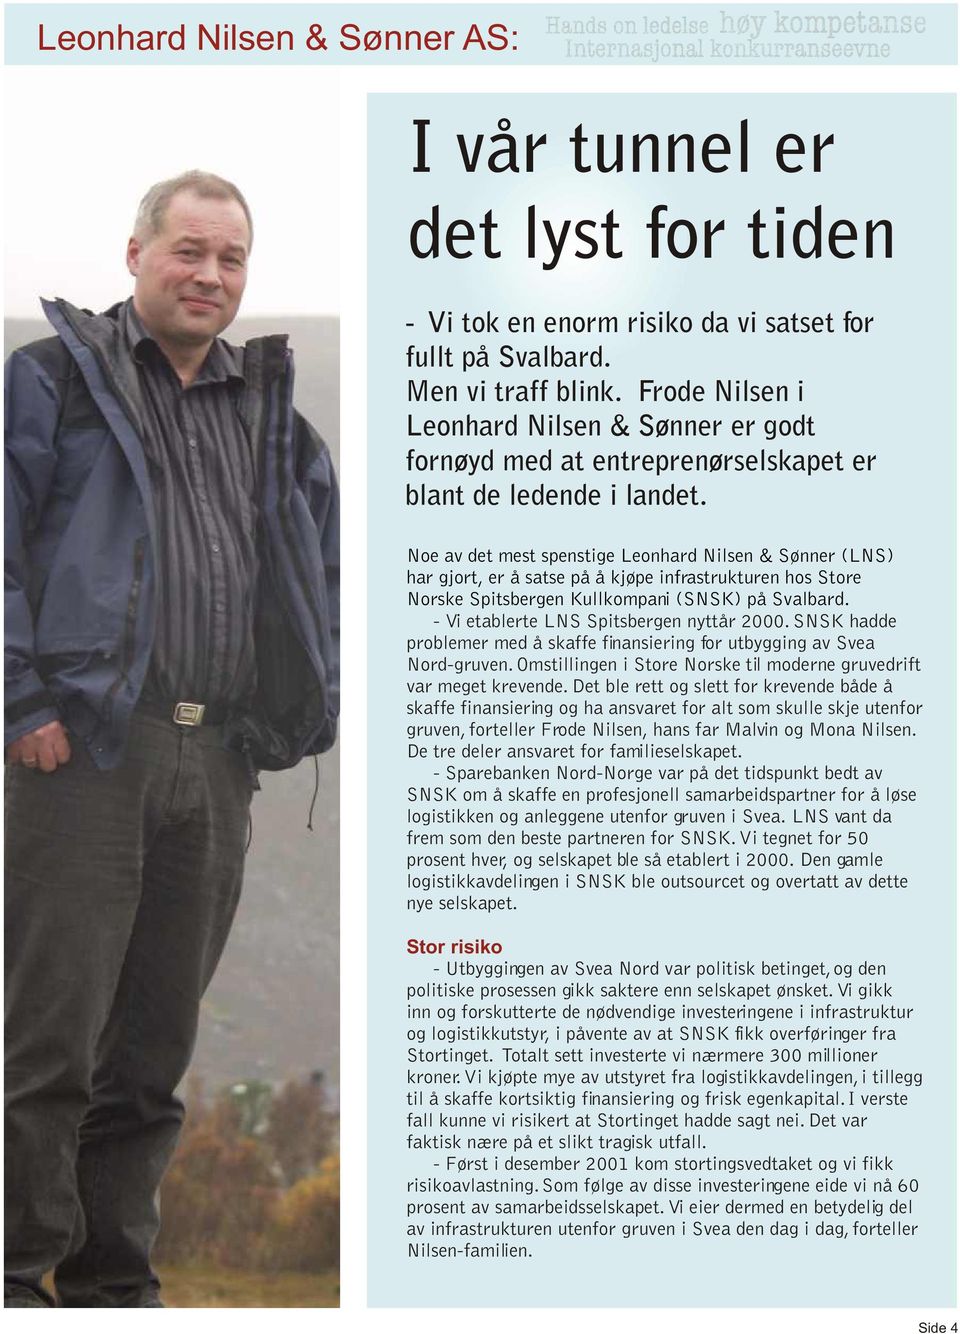 Noe av det mest spenstige Leonhard Nilsen & Sønner (LNS) har gjort, er å satse på å kjøpe infrastrukturen hos Store Norske Spitsbergen Kullkompani (SNSK) på Svalbard.